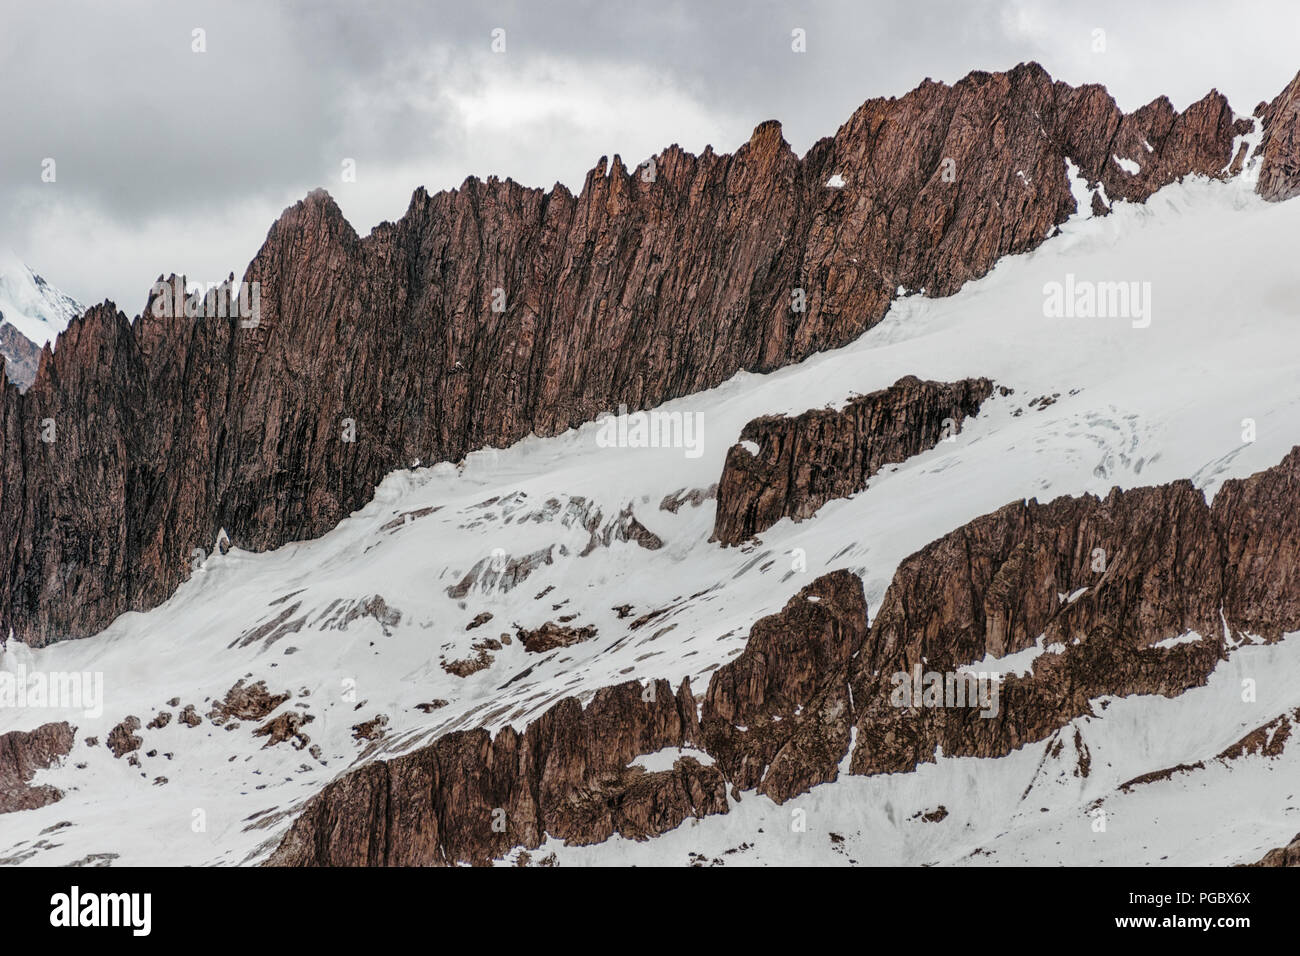 Escarpadas rocas afiladas en una montaña de nieve en un día nublado Foto de stock